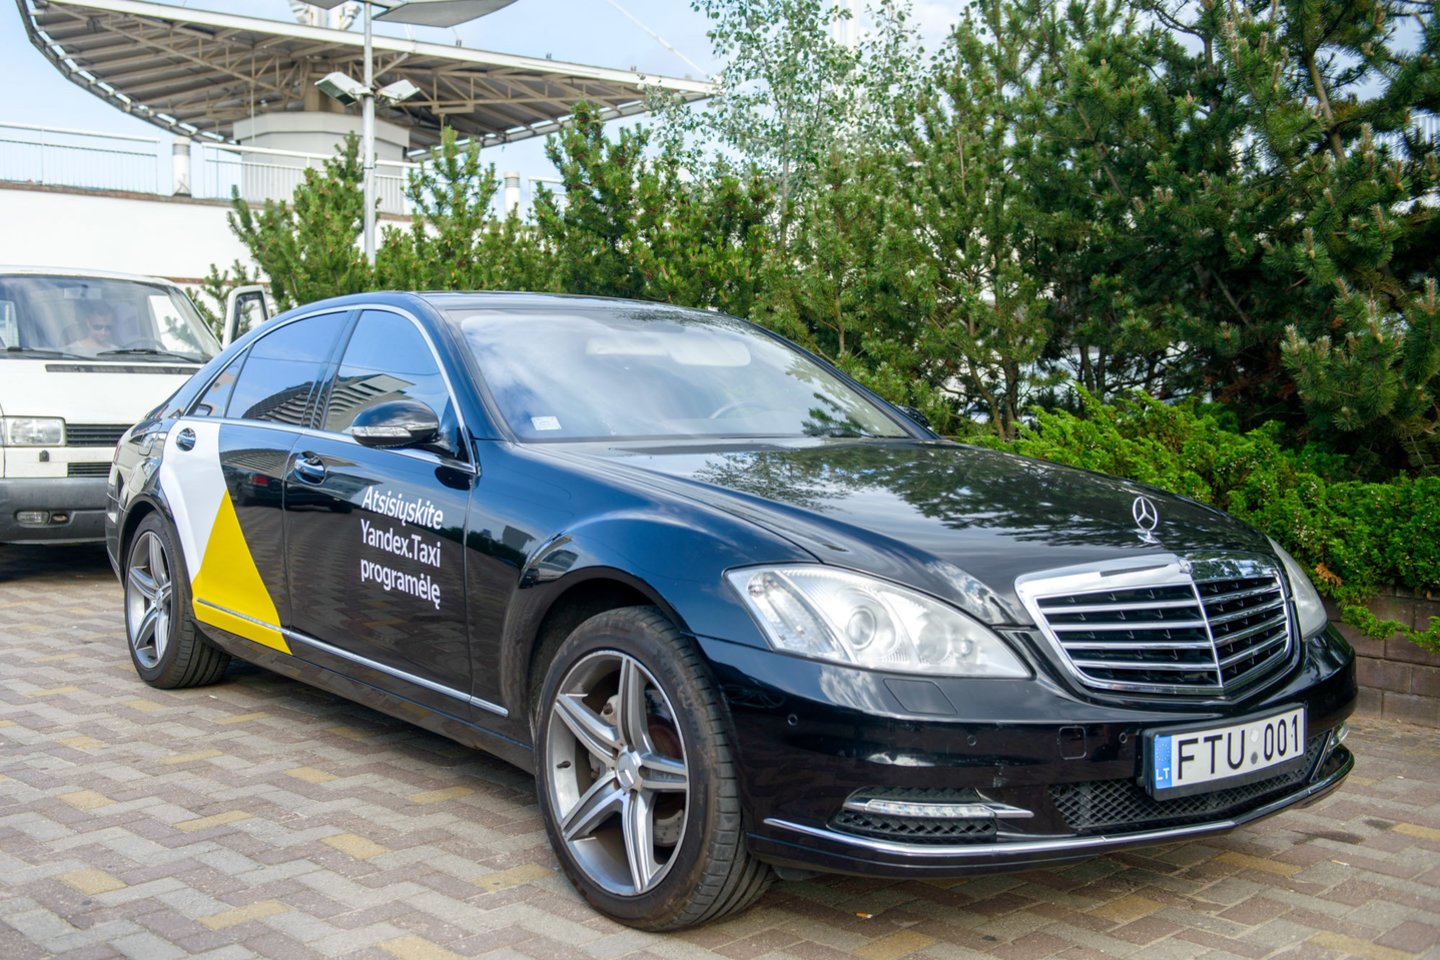 Lietuvoje startuoja Rusijos „Yandex.Taxi“.<br>J.Stacevičiaus nuotr.